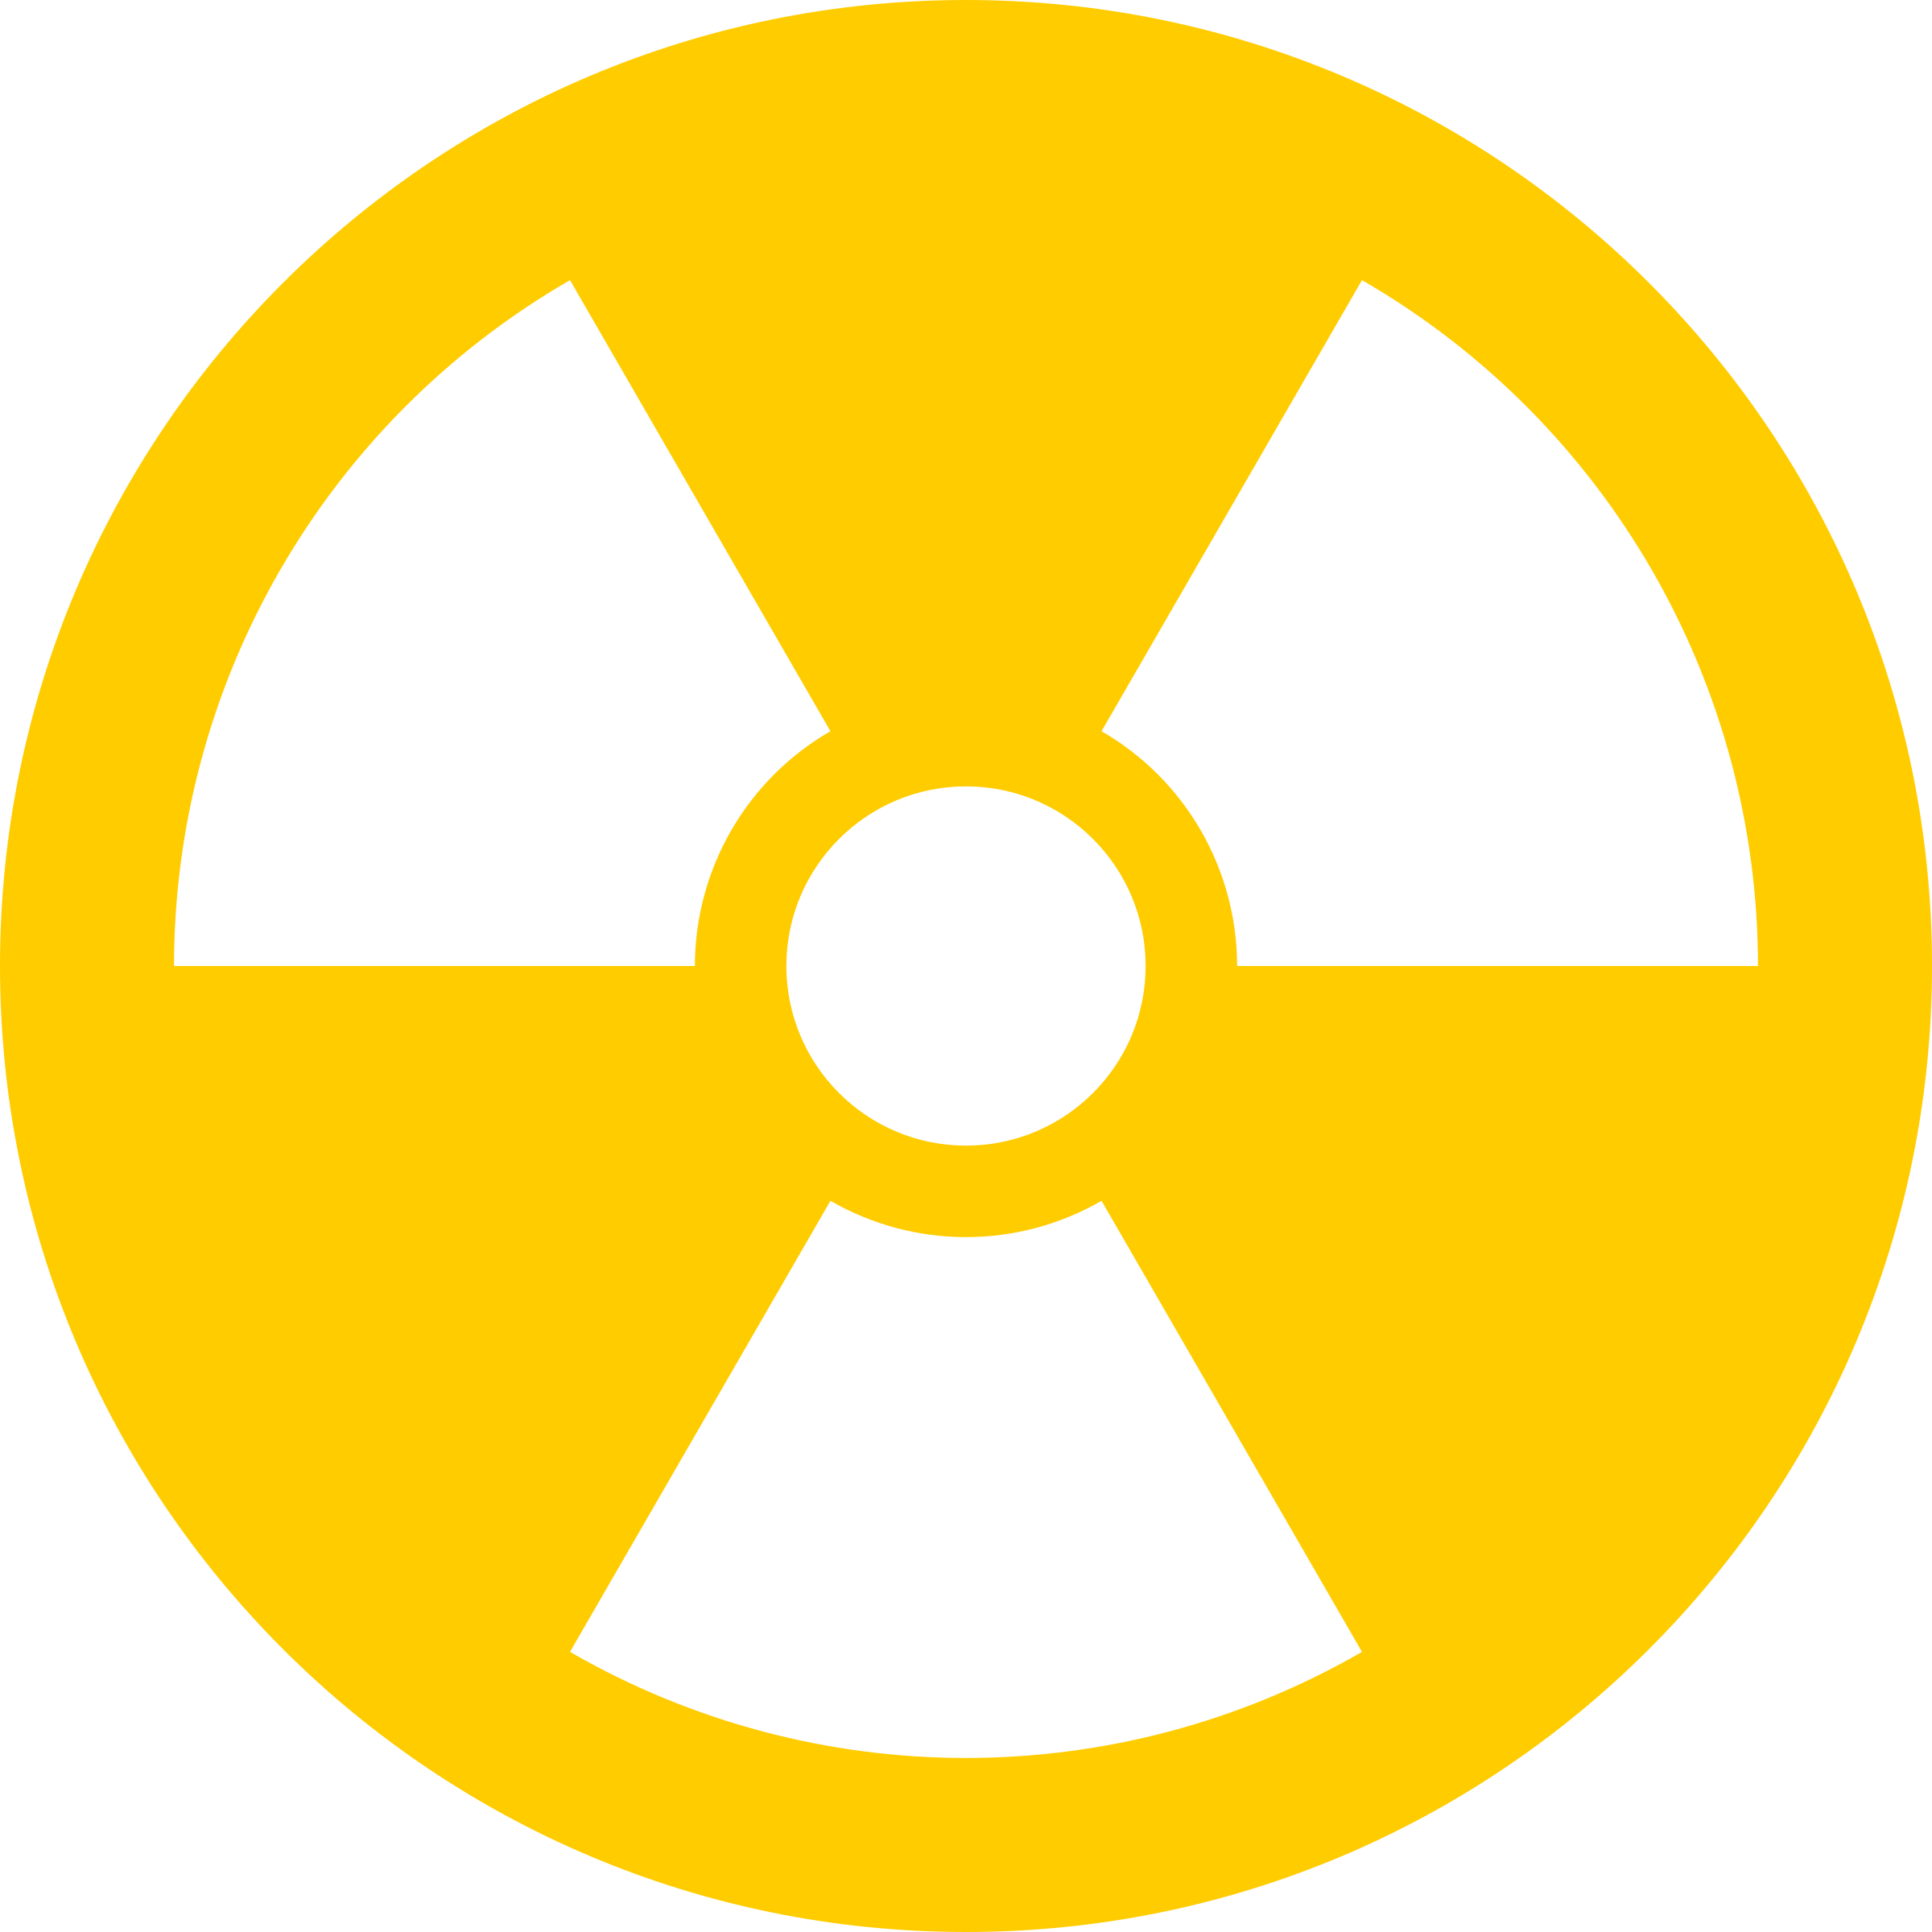 Radioactive icon stock illustration. Illustration of illustration 